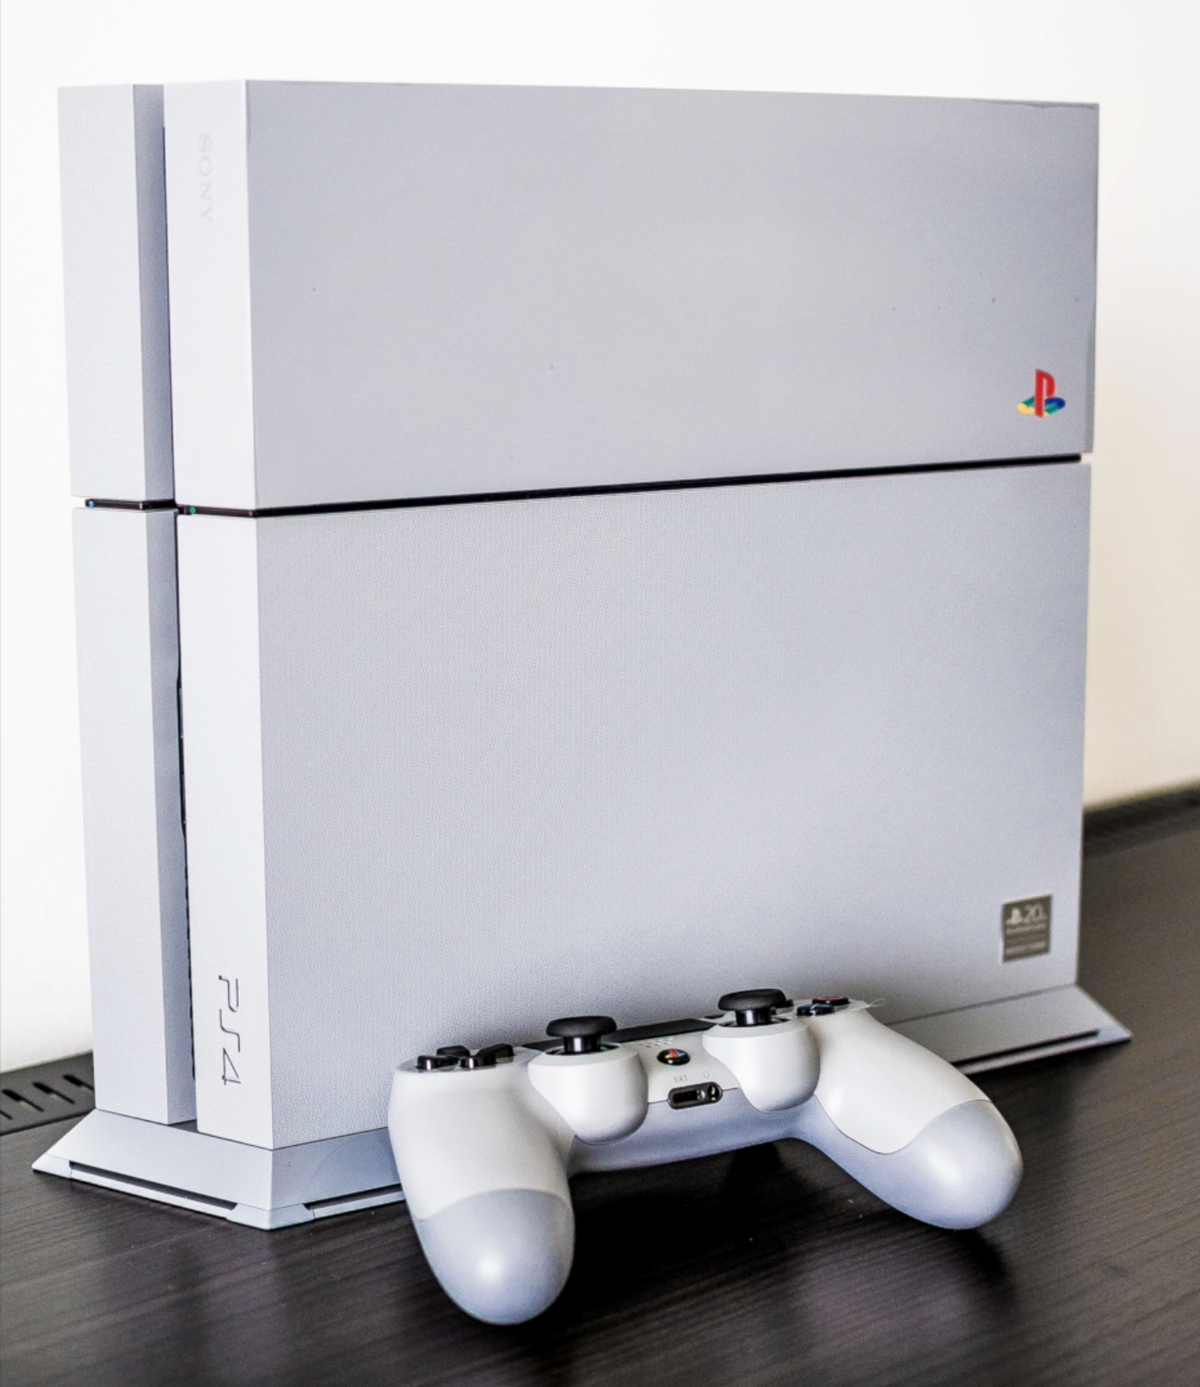 Jubilæumsudgaven af PlayStation 4, som ses på billedet her, er lavet med den originale grå farve fra PlayStation 1. Det oprindelige PlayStation-logo er også på alle delene i 20-års-udgaven.